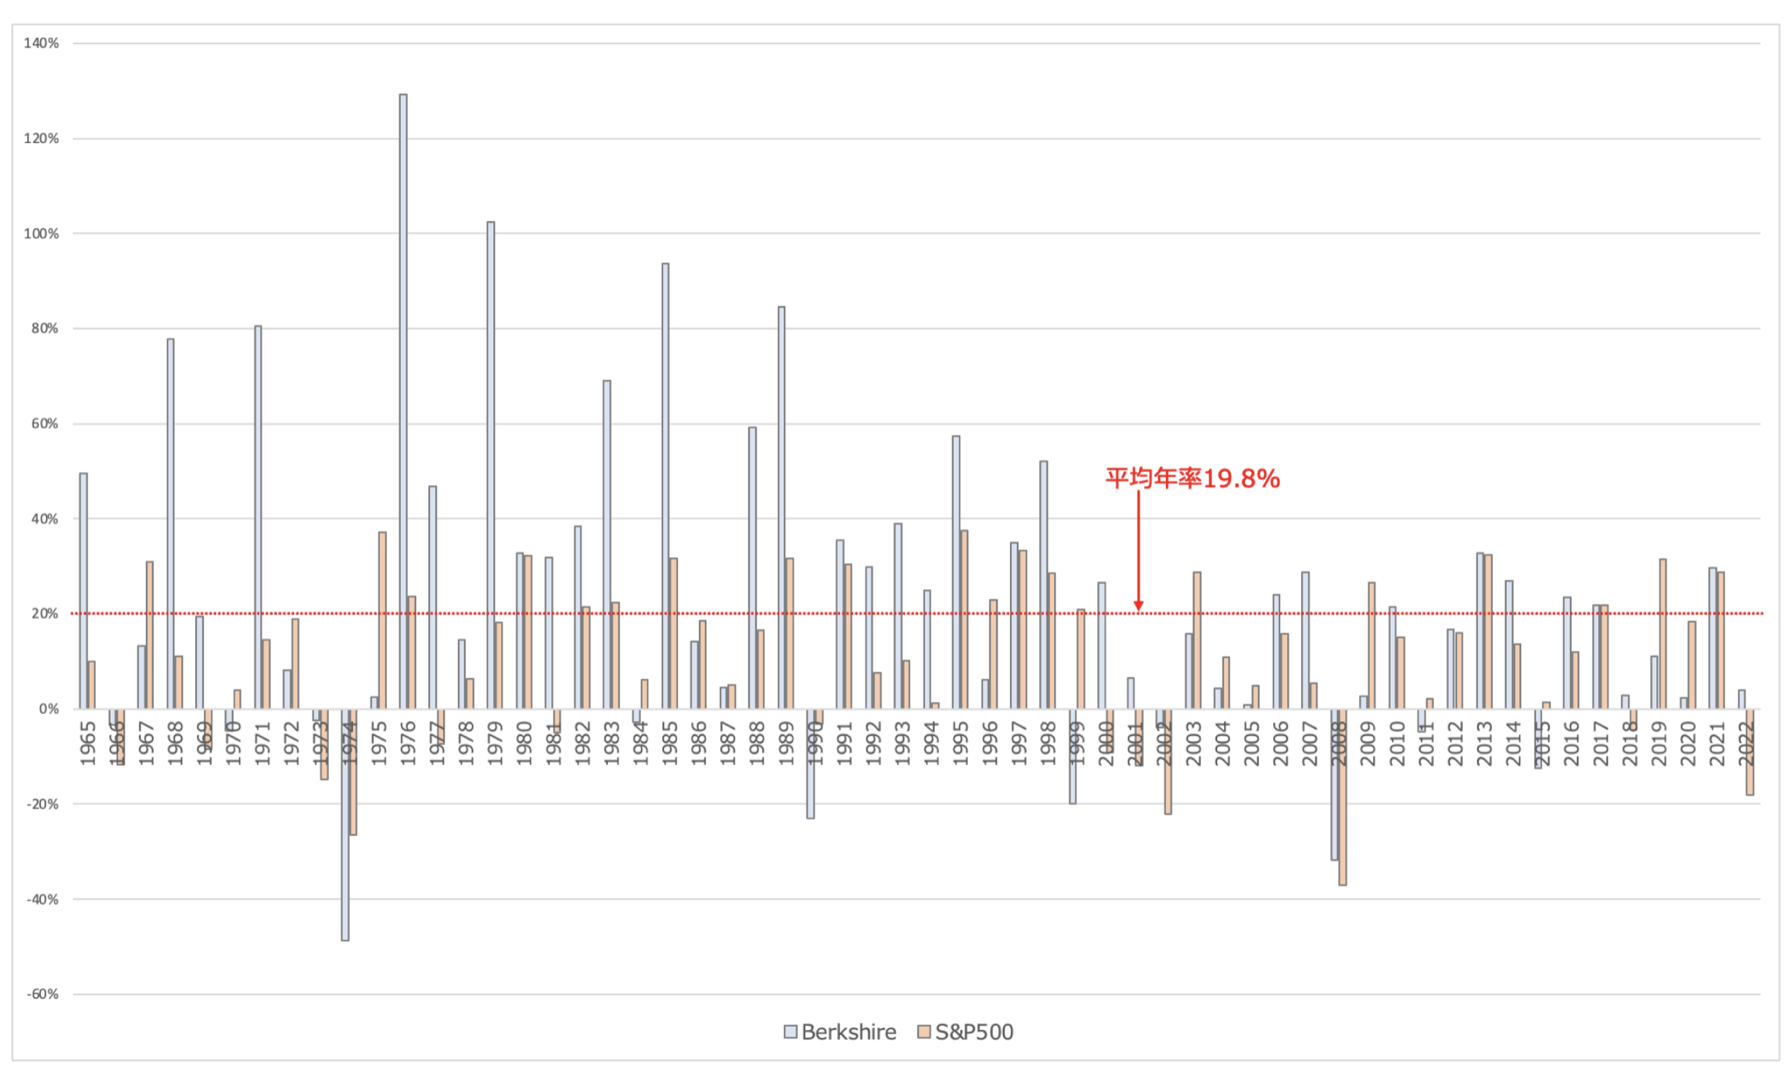 バークシャーハサウェイの株価とS&P500指数の推移の比較